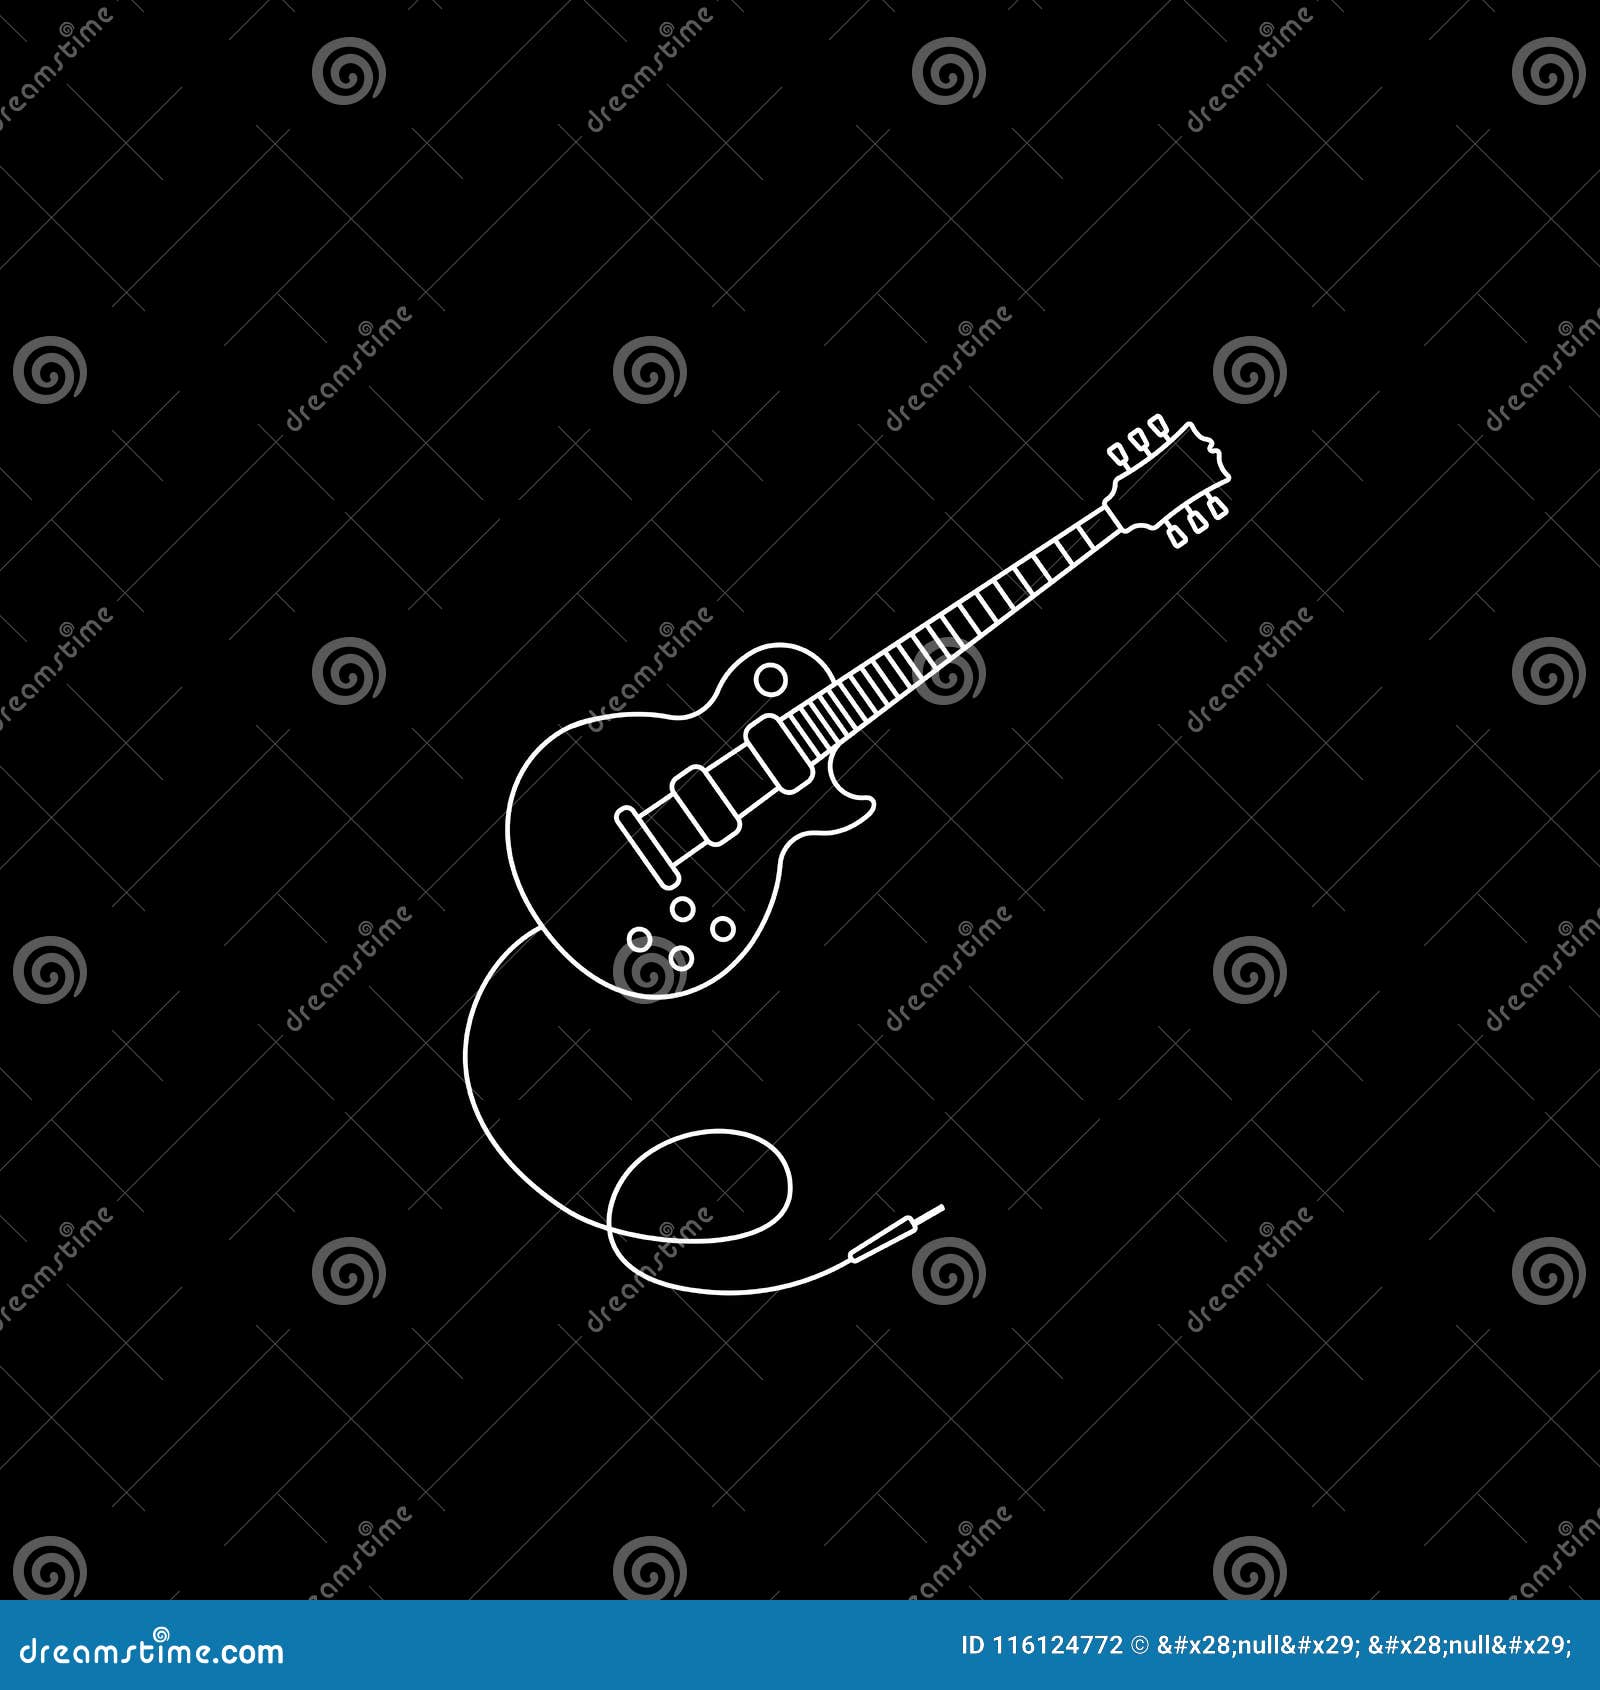 Bạn yêu thích âm nhạc và đặc biệt là đàn guitar? Hãy chiêm ngưỡng đồ họa biểu tượng guitar từ chúng tôi, với thiết kế độc đáo, sáng tạo, sẽ khiến bạn cảm thấy vô cùng thích thú và trở thành nguồn cảm hứng cho người chơi guitar.